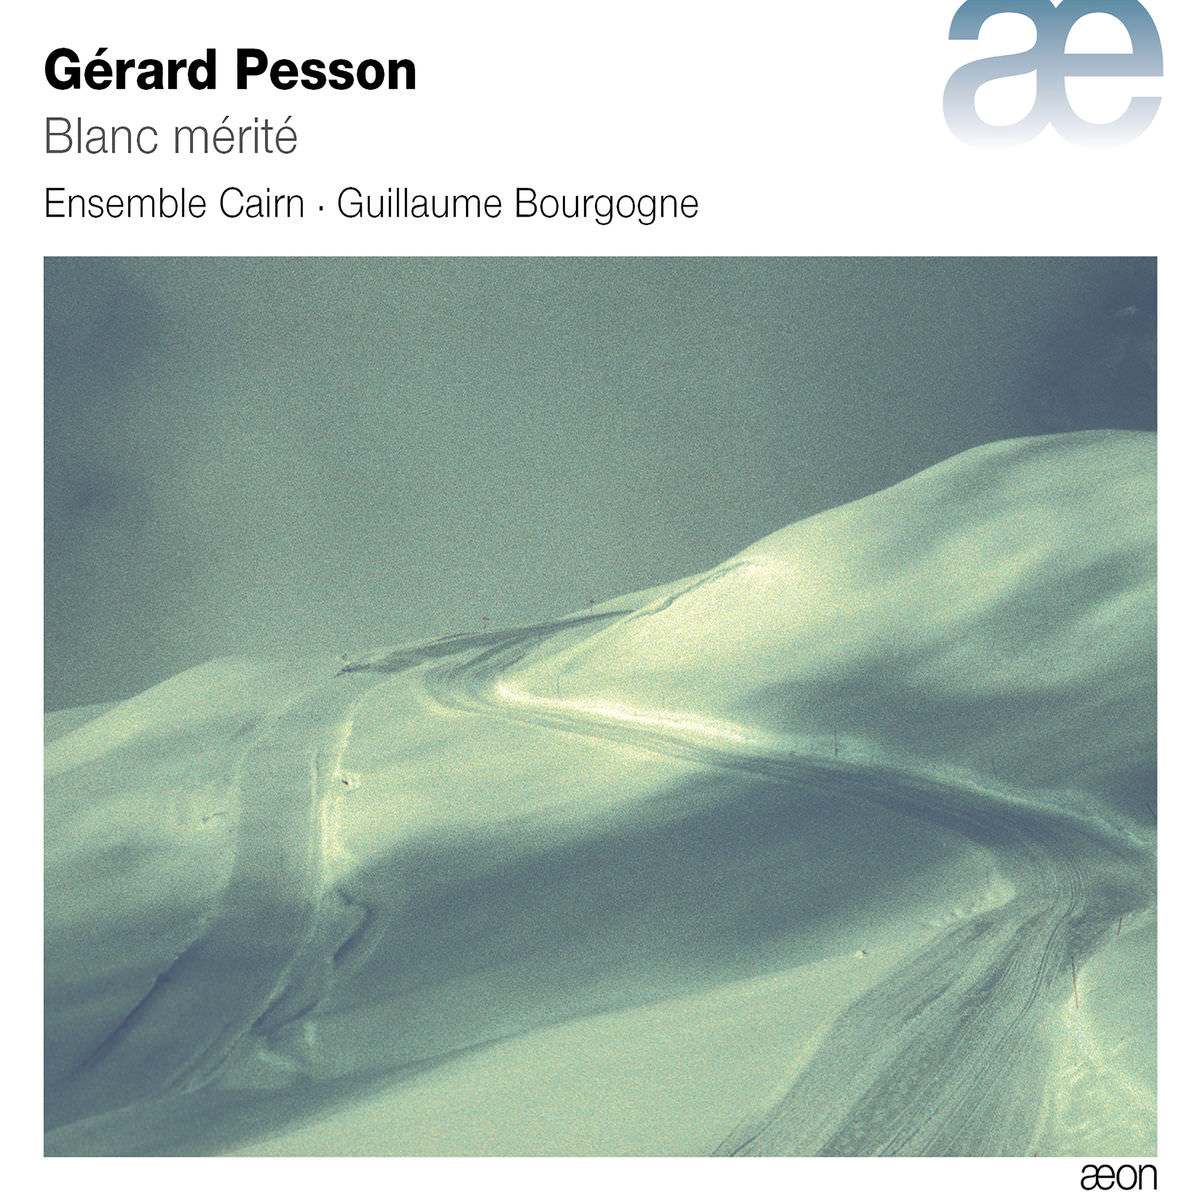 Ensemble Cairn, Guillaume Bourgogne - Pesson: Blanc merite (2018) [FLAC 24bit/48kHz]